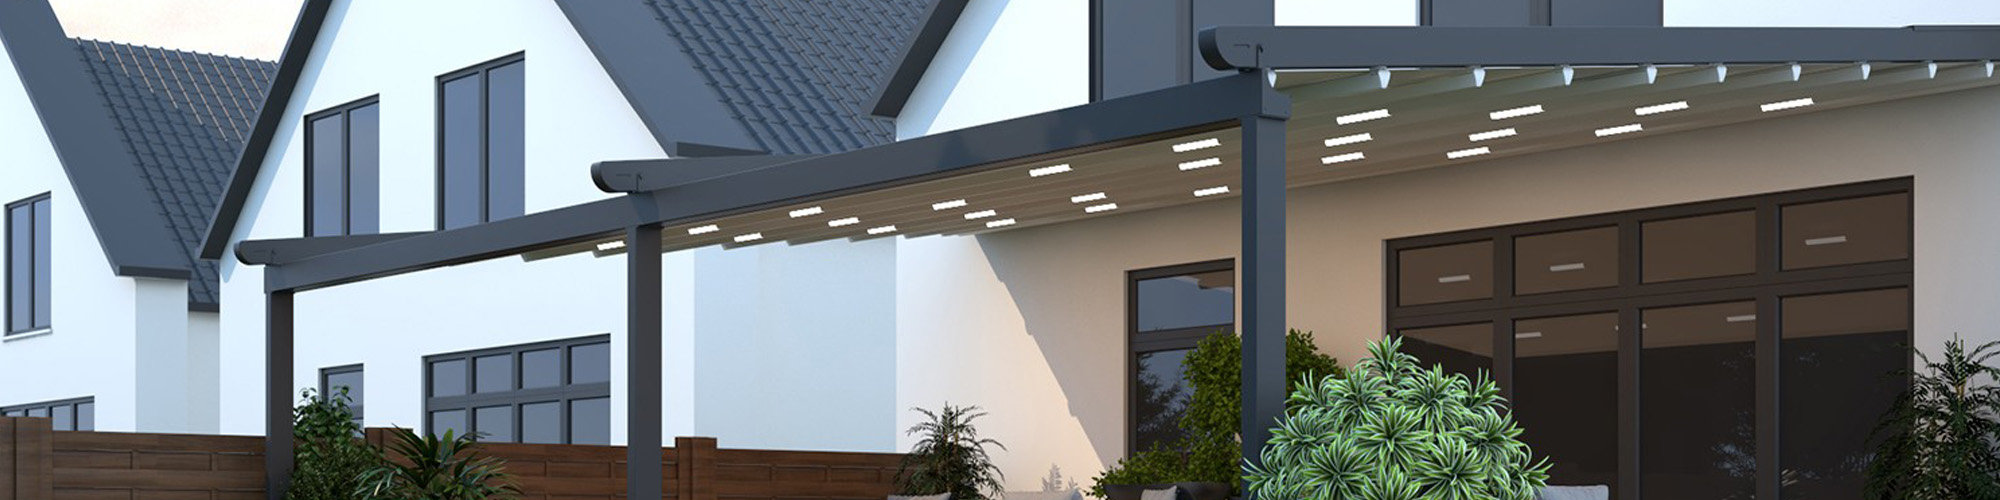 Verdeca; Folding roof with aluminum frame slider